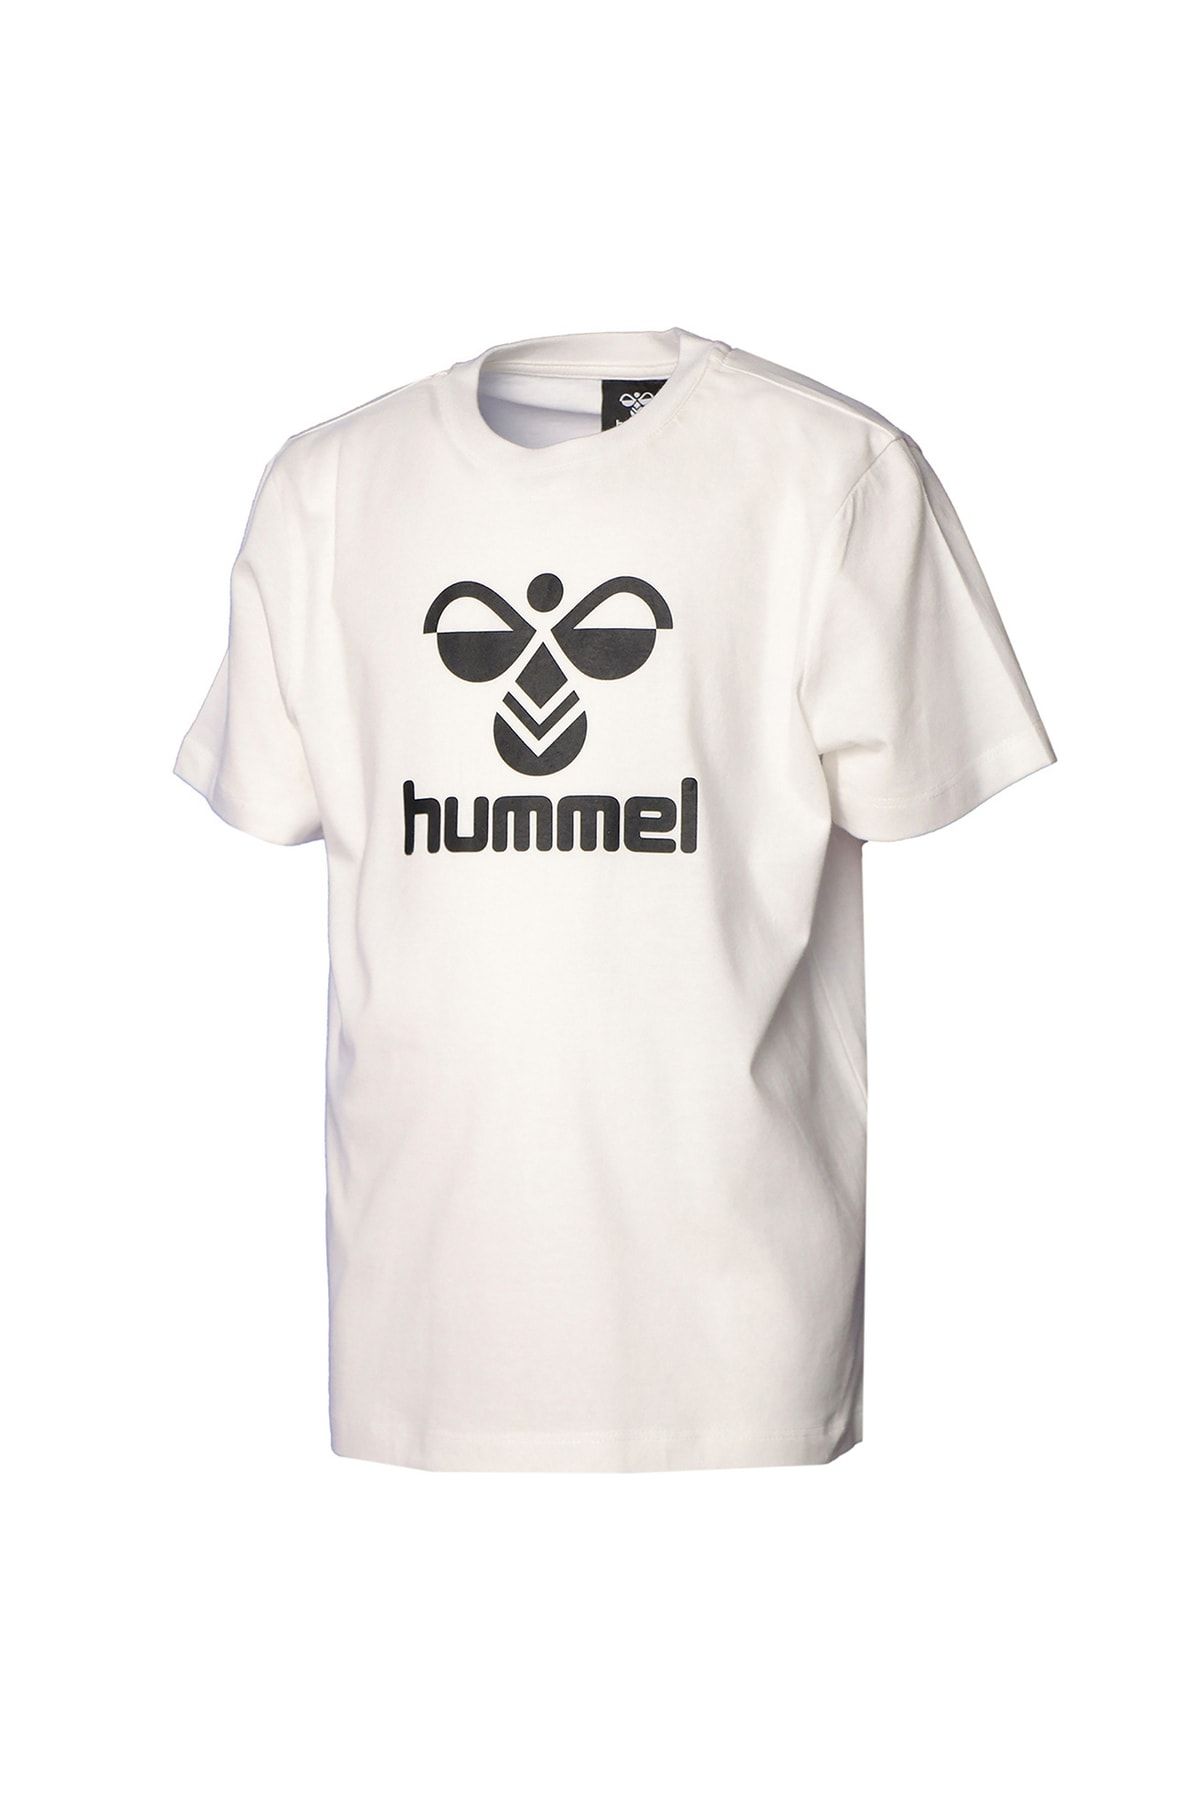 hummel Baskılı Kırık Beyaz Erkek Çocuk T-shirt 911653-9003 Hmllauren T-shırt S/s